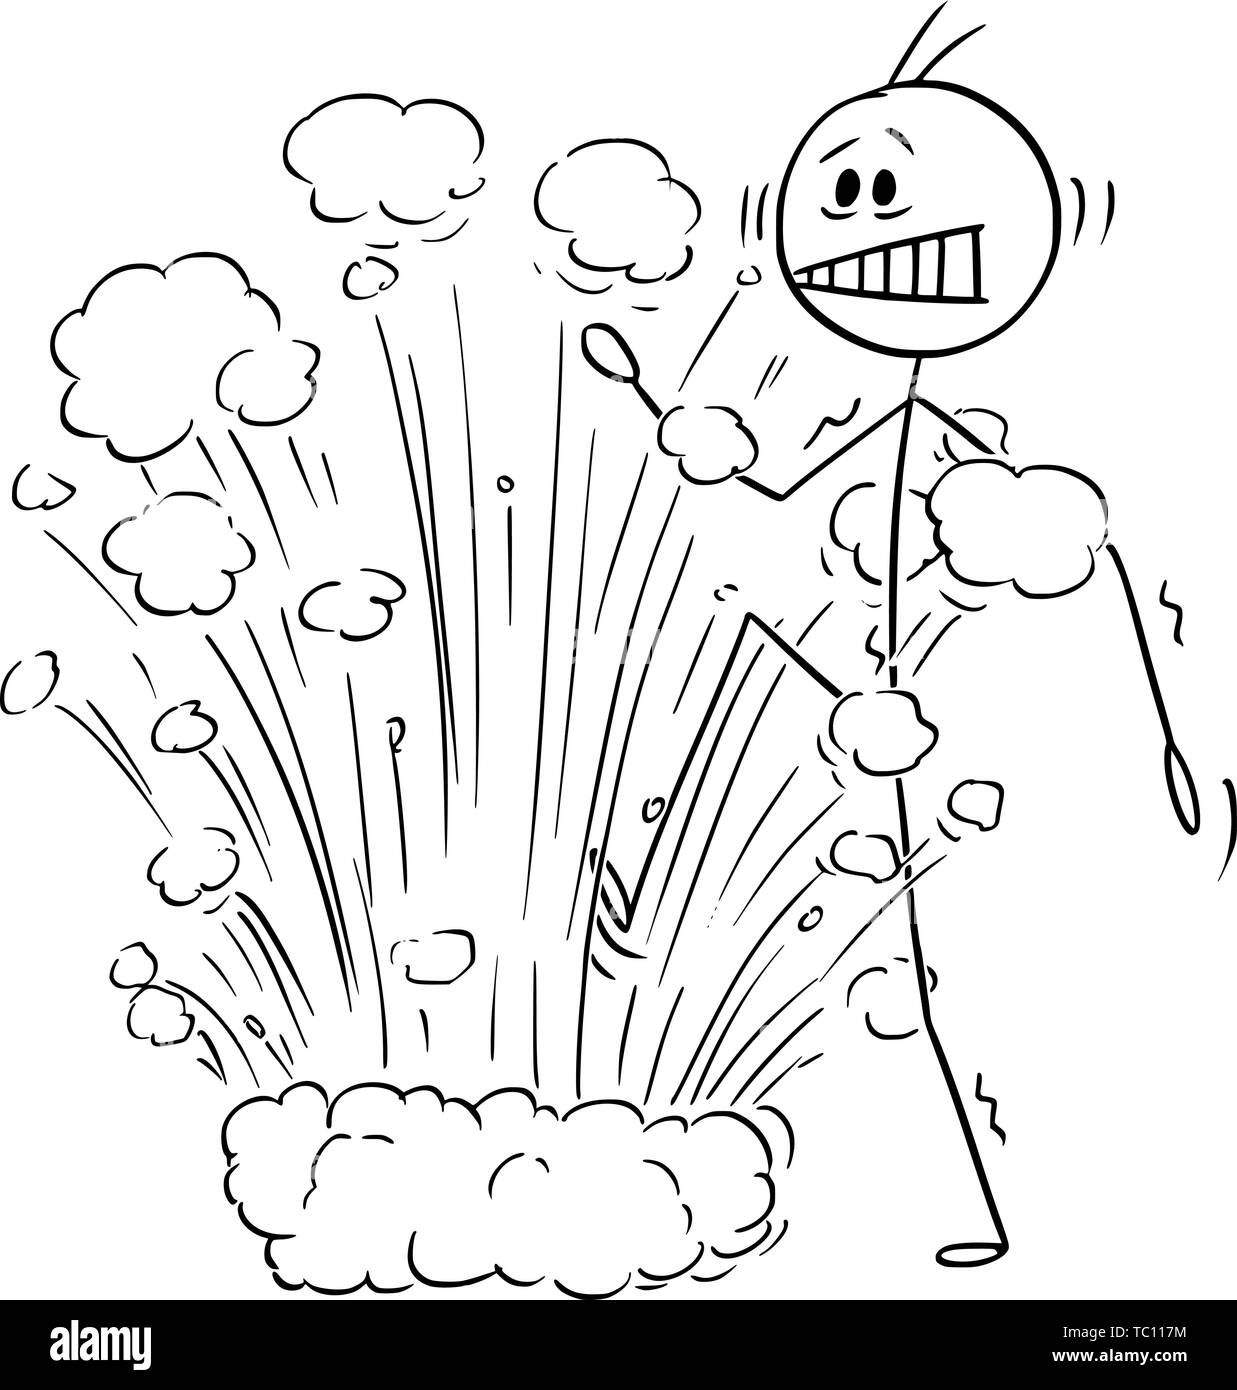 Vektor cartoon Strichmännchen Zeichnen konzeptionelle Darstellung der Mann oder Geschäftsmann durch Explosion überrascht, als Verstärkung auf Landmine. Business Konzept der versteckte Problem. Stock Vektor